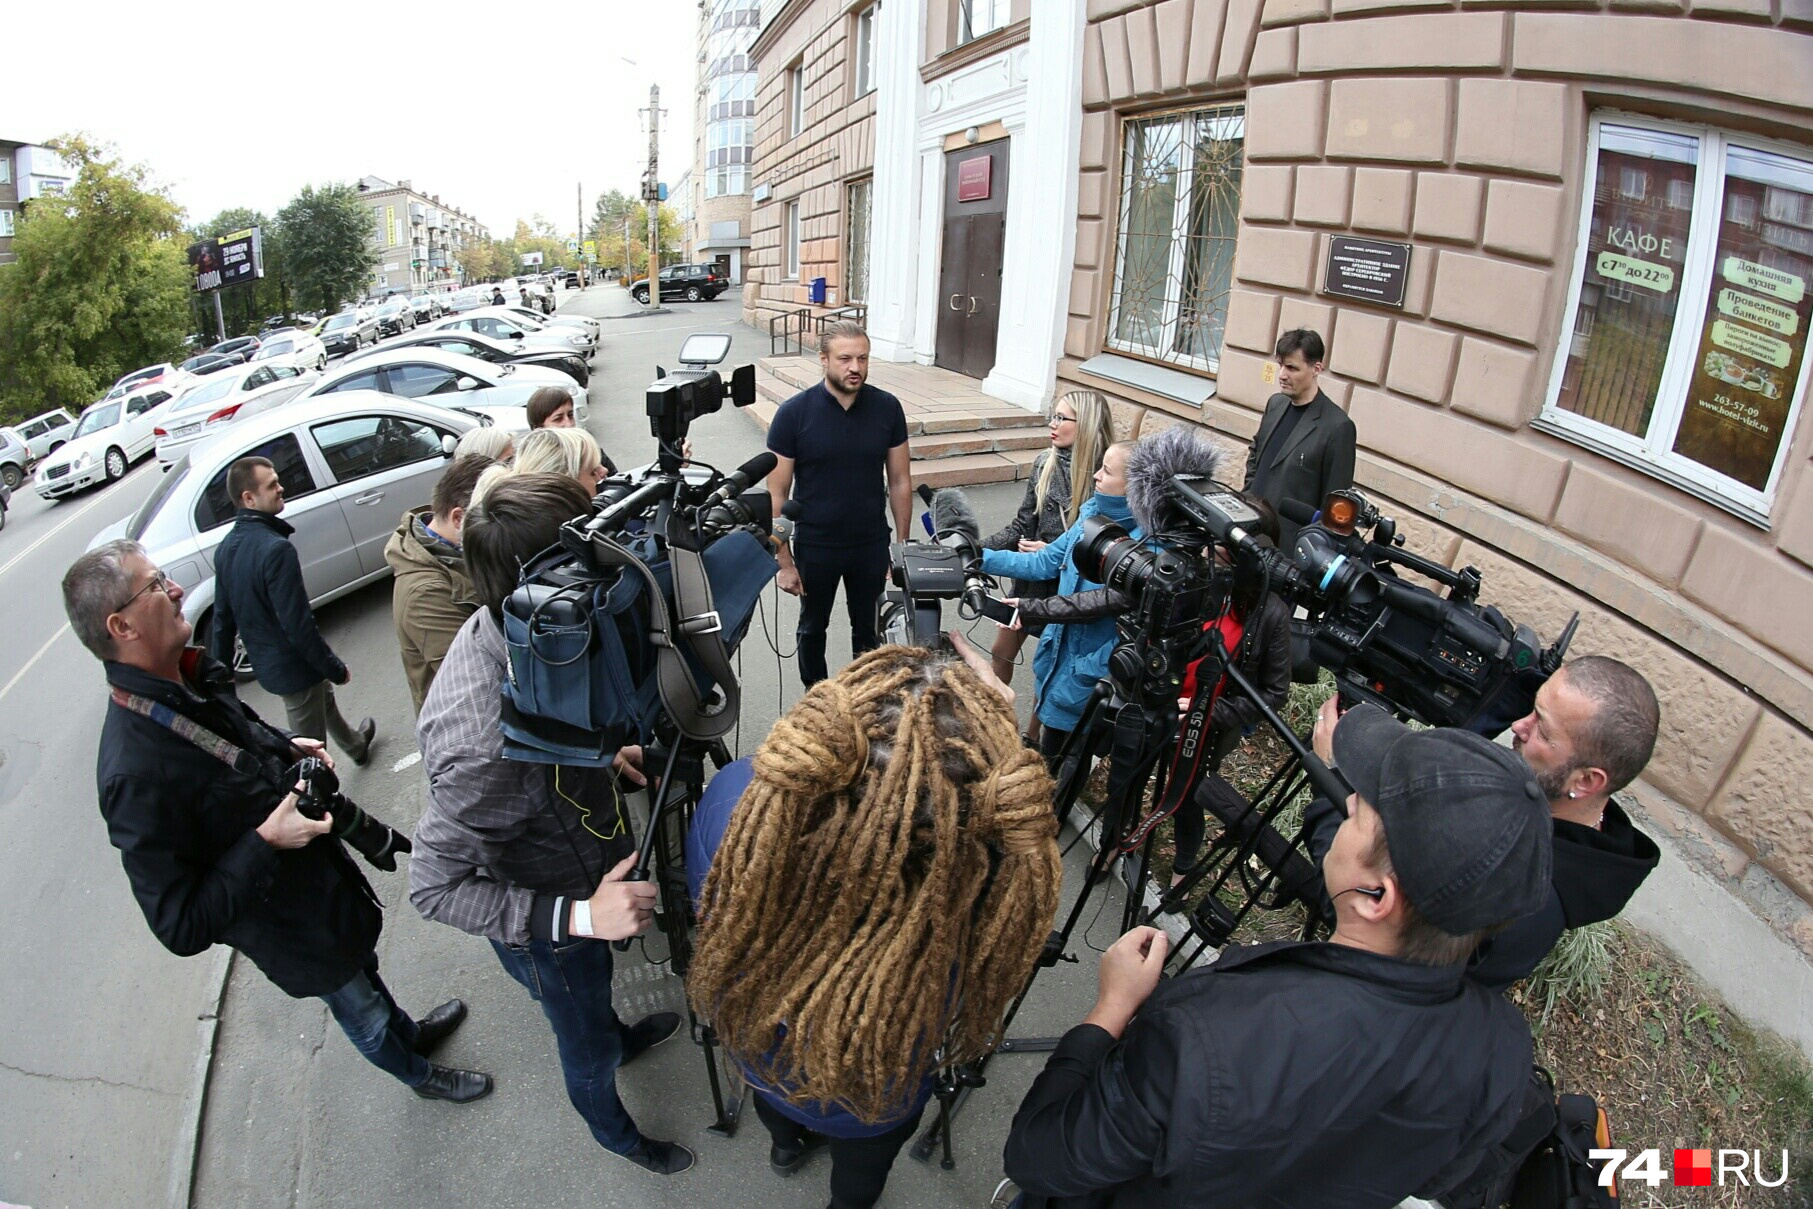 Николай Сандаков заявил журналистам, что рассчитывает на оправдание